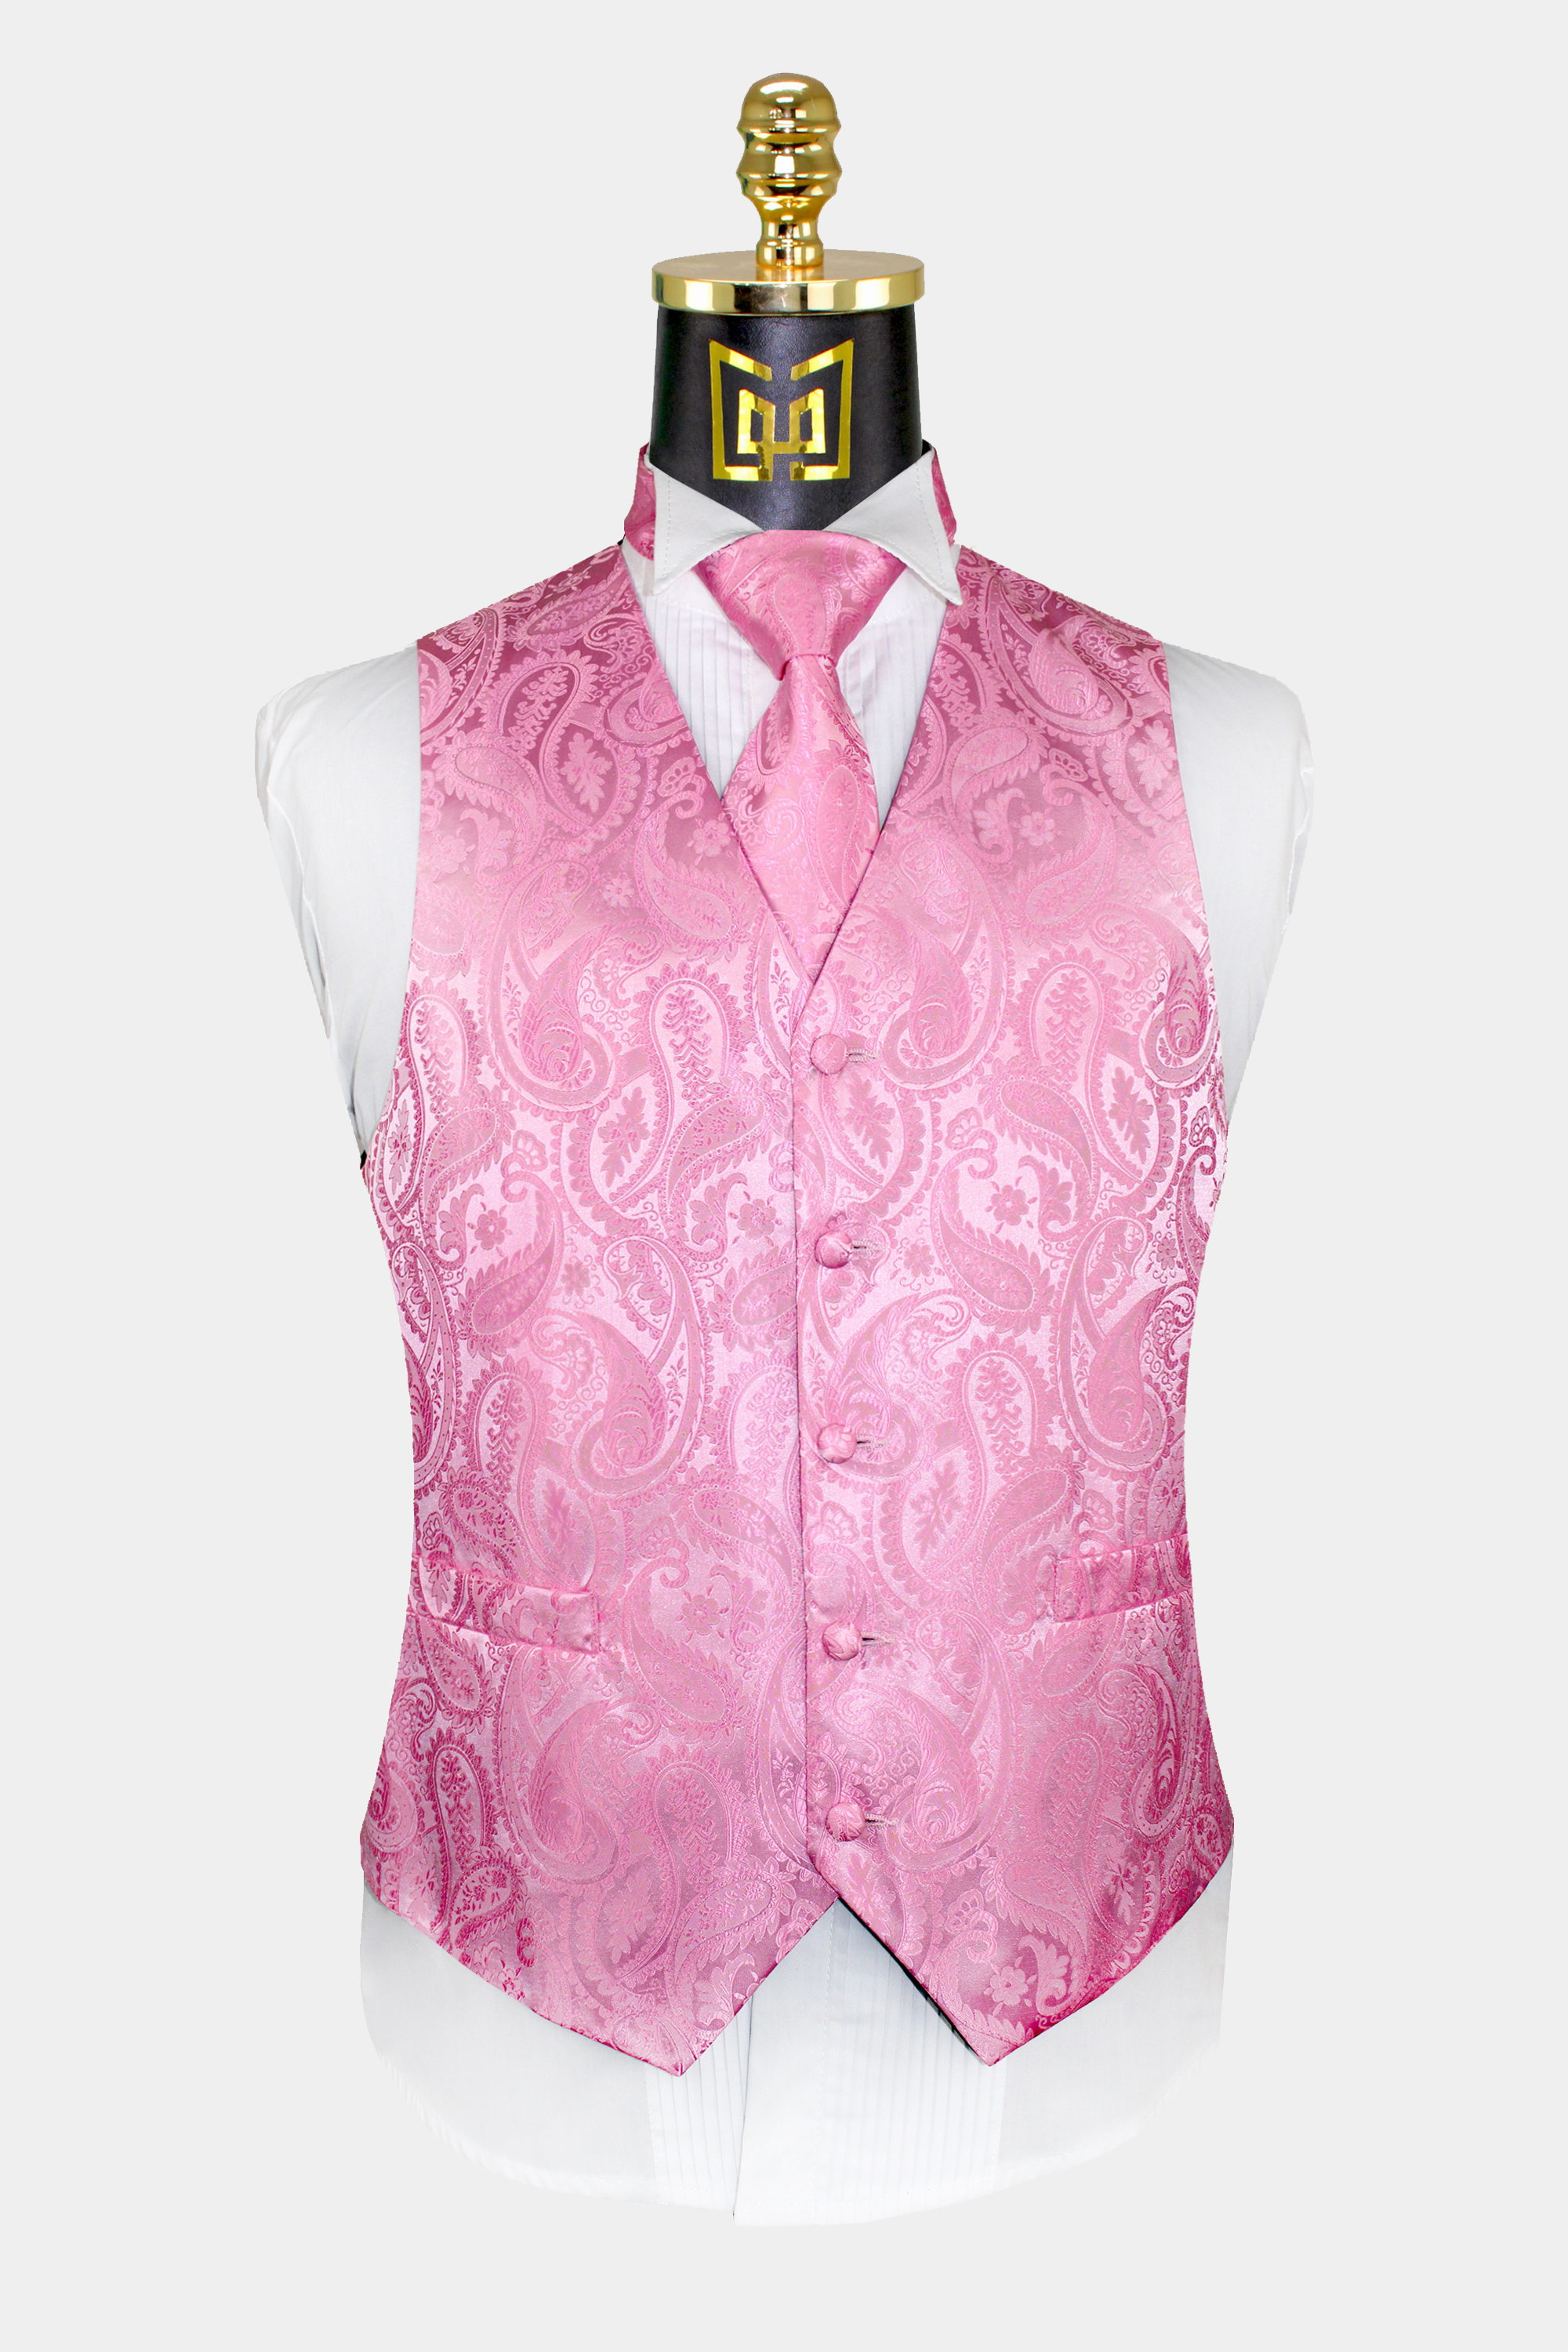 Light Pink Paisley Vest & Tie Set - 3 Piece